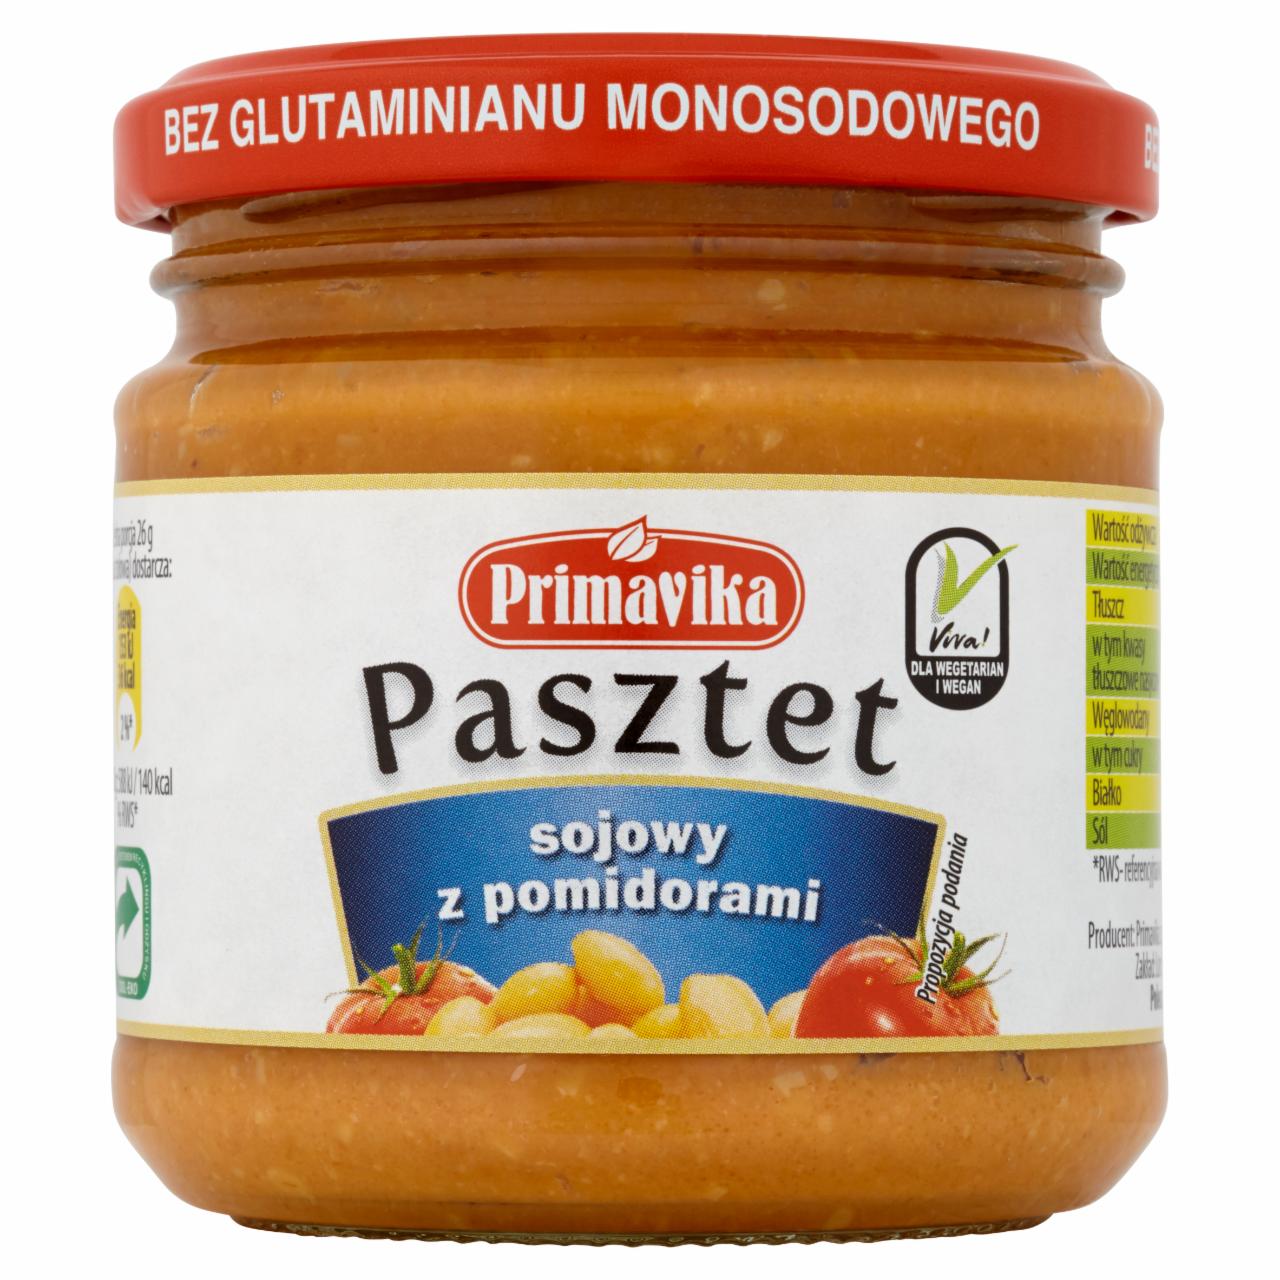 Zdjęcia - Primavika Pasztet sojowy z pomidorami 160 g